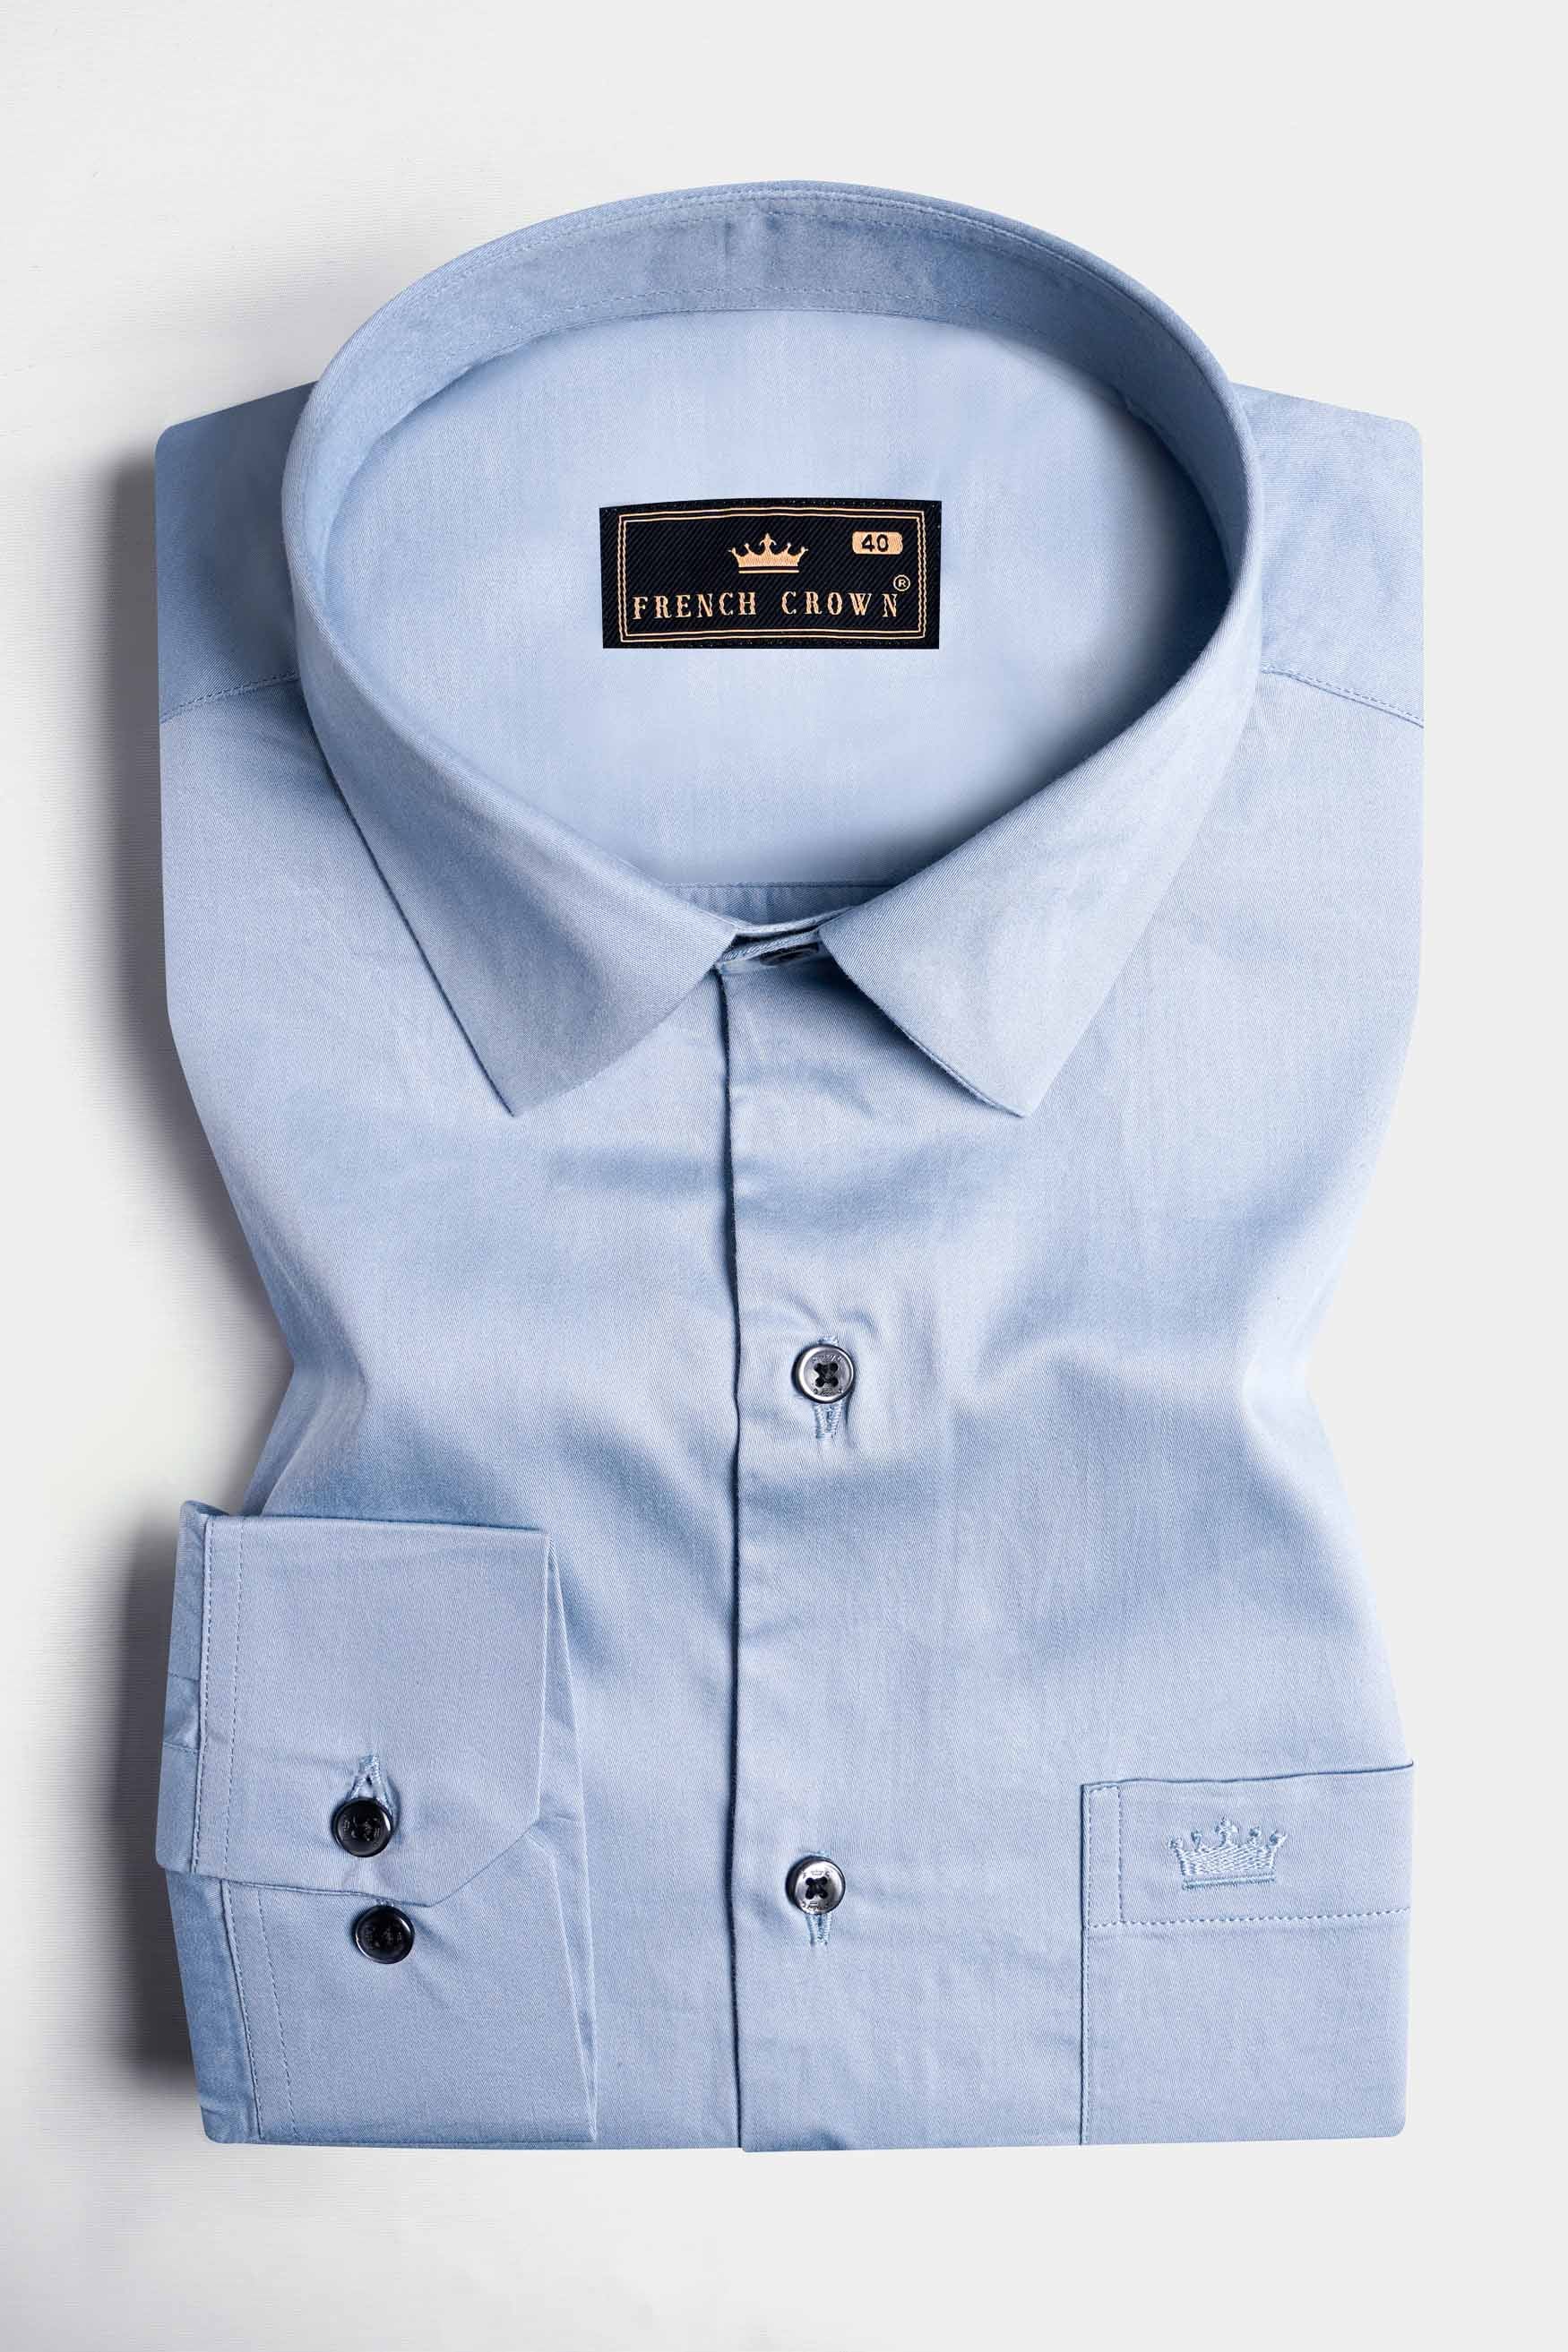 Periwinkle Blue Subtle Sheen Super Soft Premium Cotton Shirt